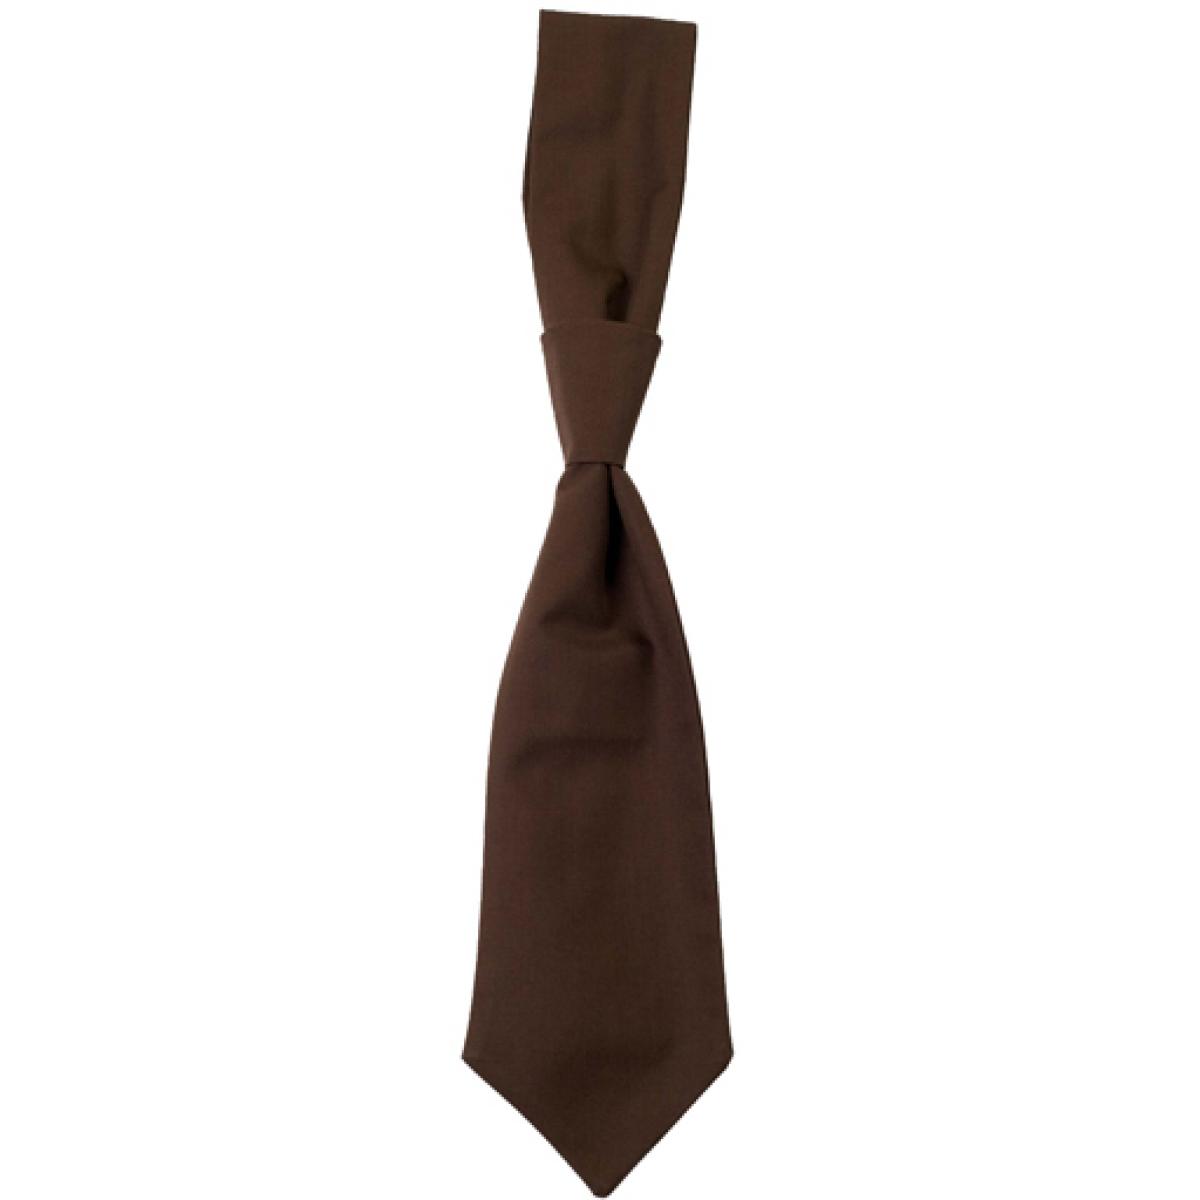 Hersteller: CG Workwear Herstellernummer: 01360-01 Artikelbezeichnung: Krawatte Messina / Zertifiziert nach Oeko-Tex 100 Farbe: Toffee